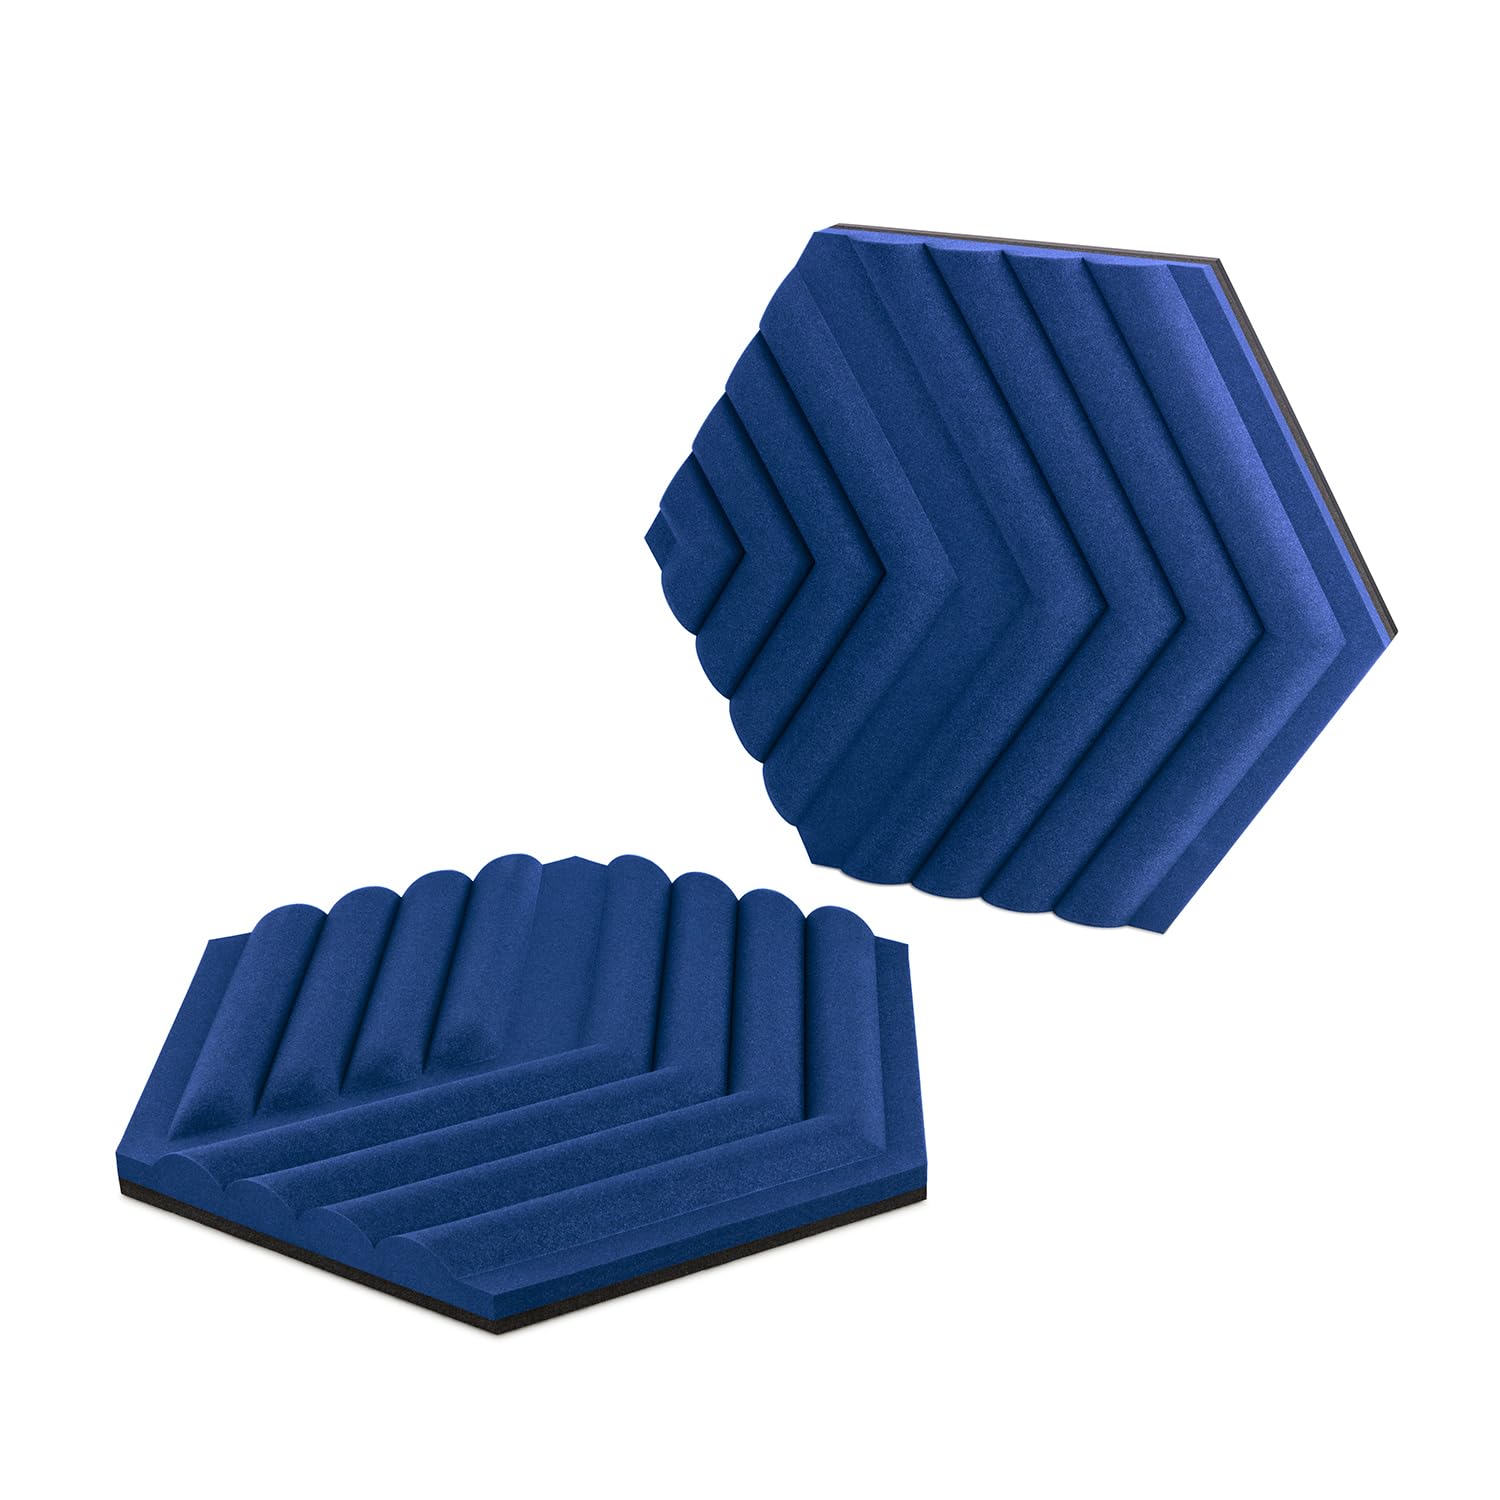 Elgato Wave Panels Starter Set (Blau) - Schalldämmende Module, Dual-Density-Schaumstoff, einzigartige EasyClick-Rahmen, modularer Aufbau, einfaches Anbringen und Entfernen